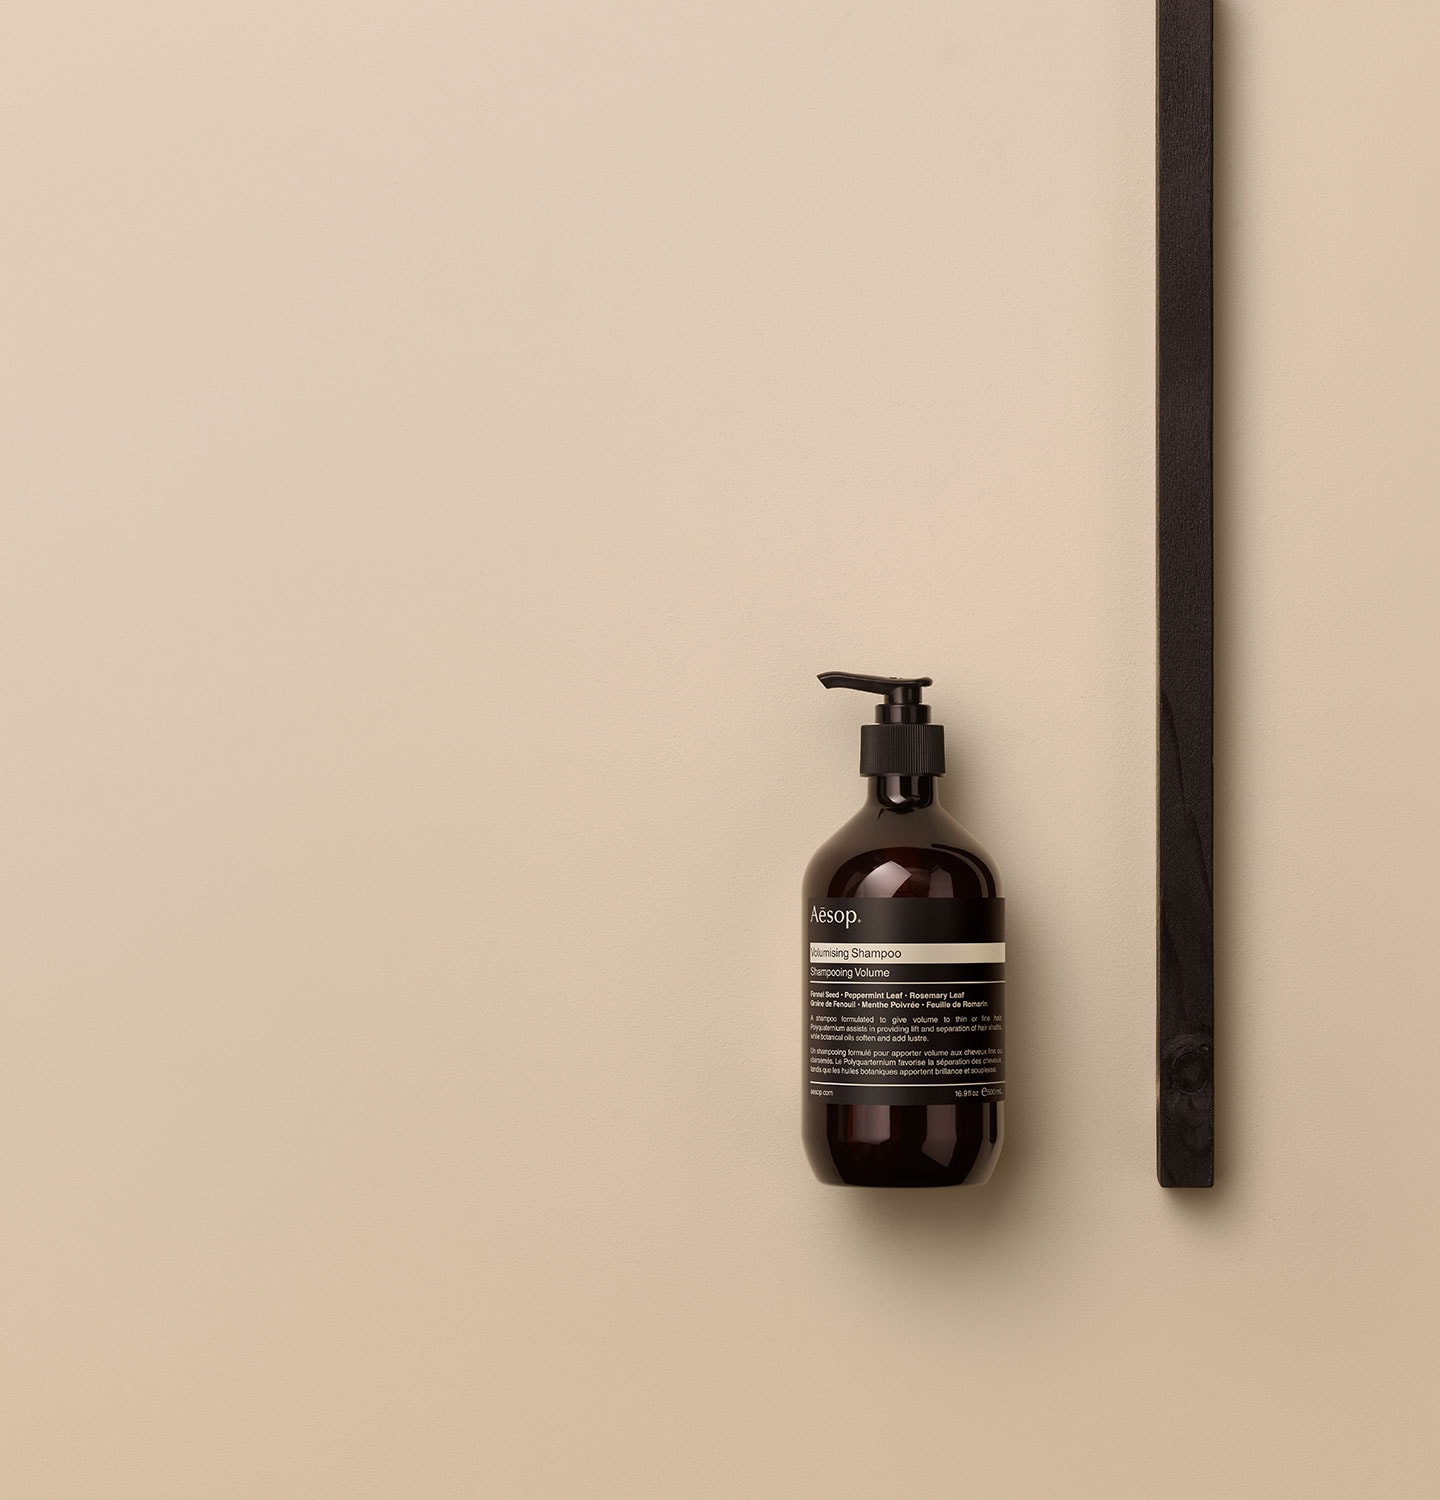 Aesop Volumising shampoo in amber pump bottle arranged alongside a dark wooden object on a beige surface.